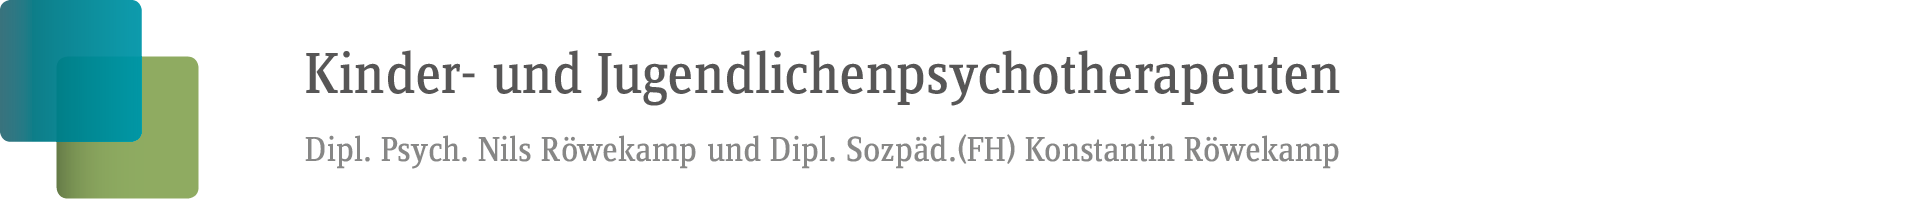 Psychotherapeuten für Kinder und Jugendliche in Potsdam